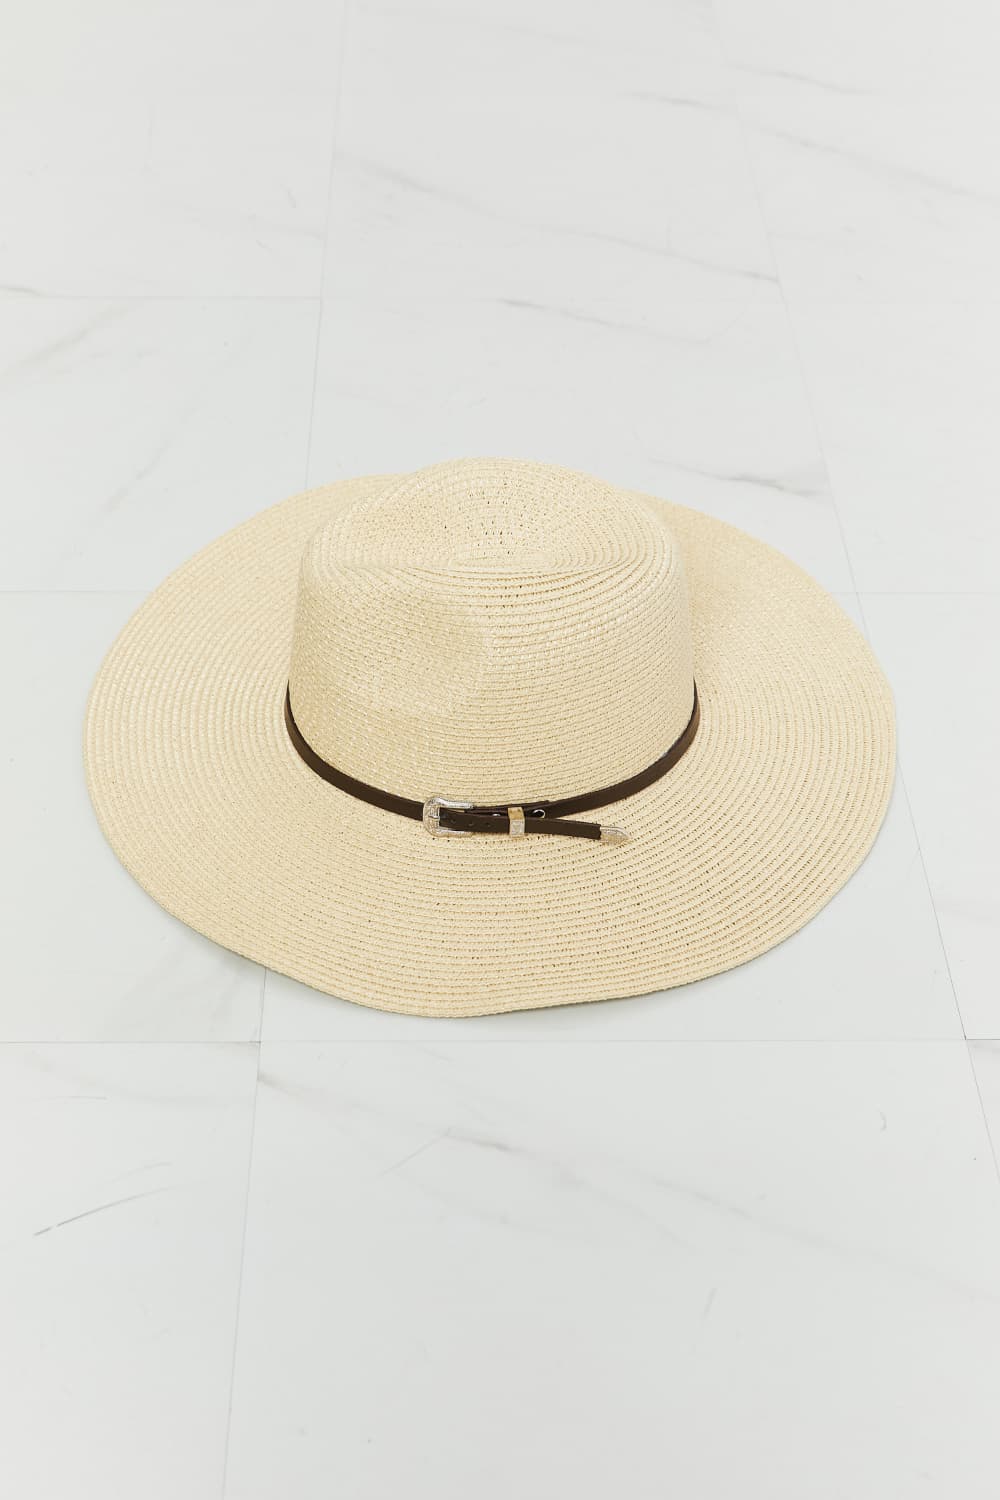 Boho Summer Straw Fedora Hat - Shop All Around Divas